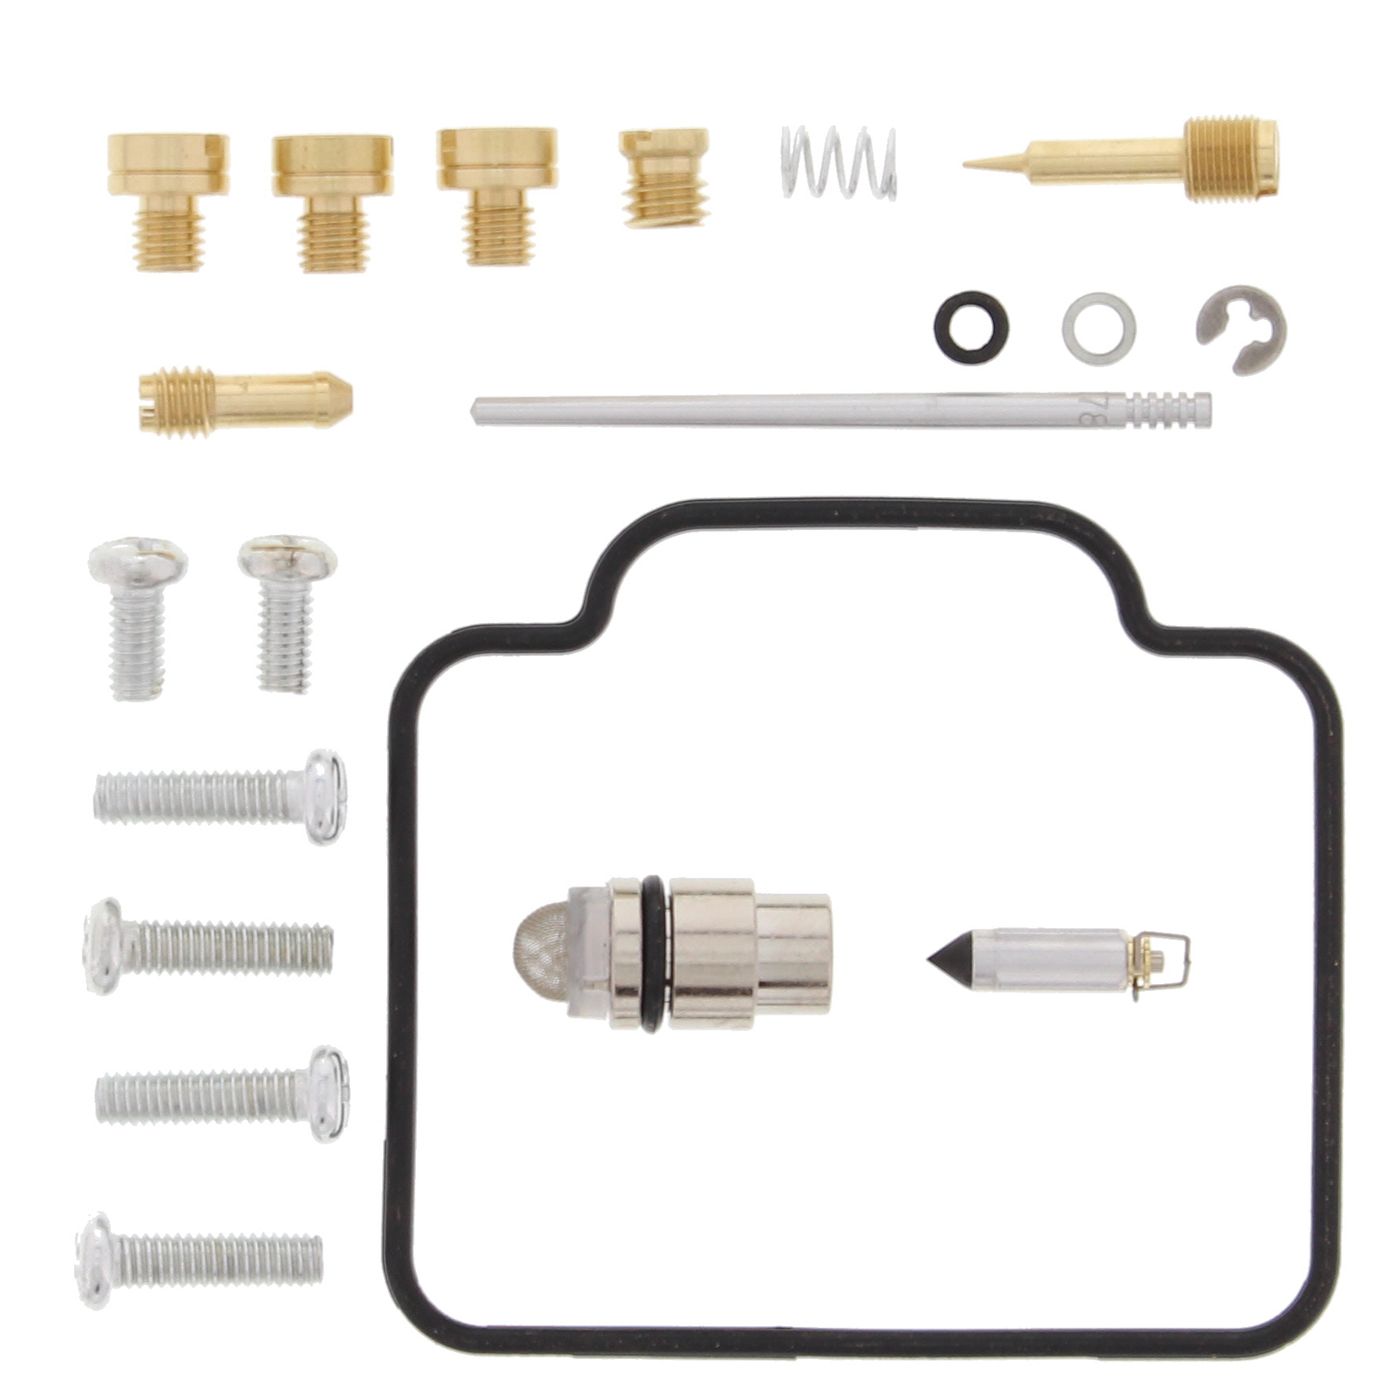 Wrp Carb Repair Kits - WRP261016 image